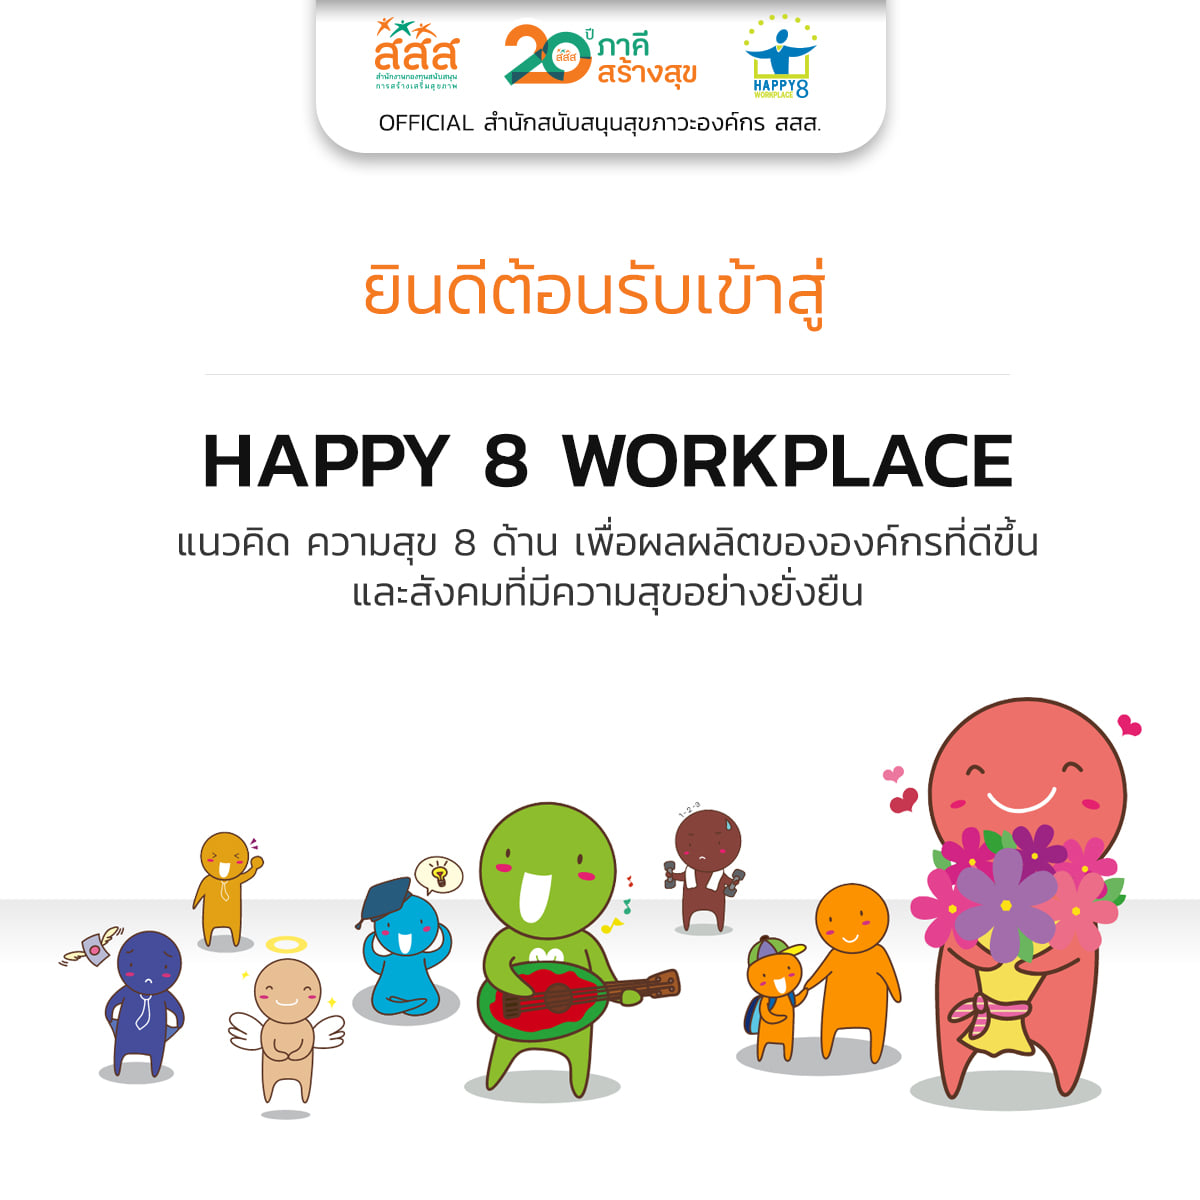 จป. ยุคใหม่ โรงงานปลอดภัย ใส่ใจสุขภาวะองค์กร thaihealth